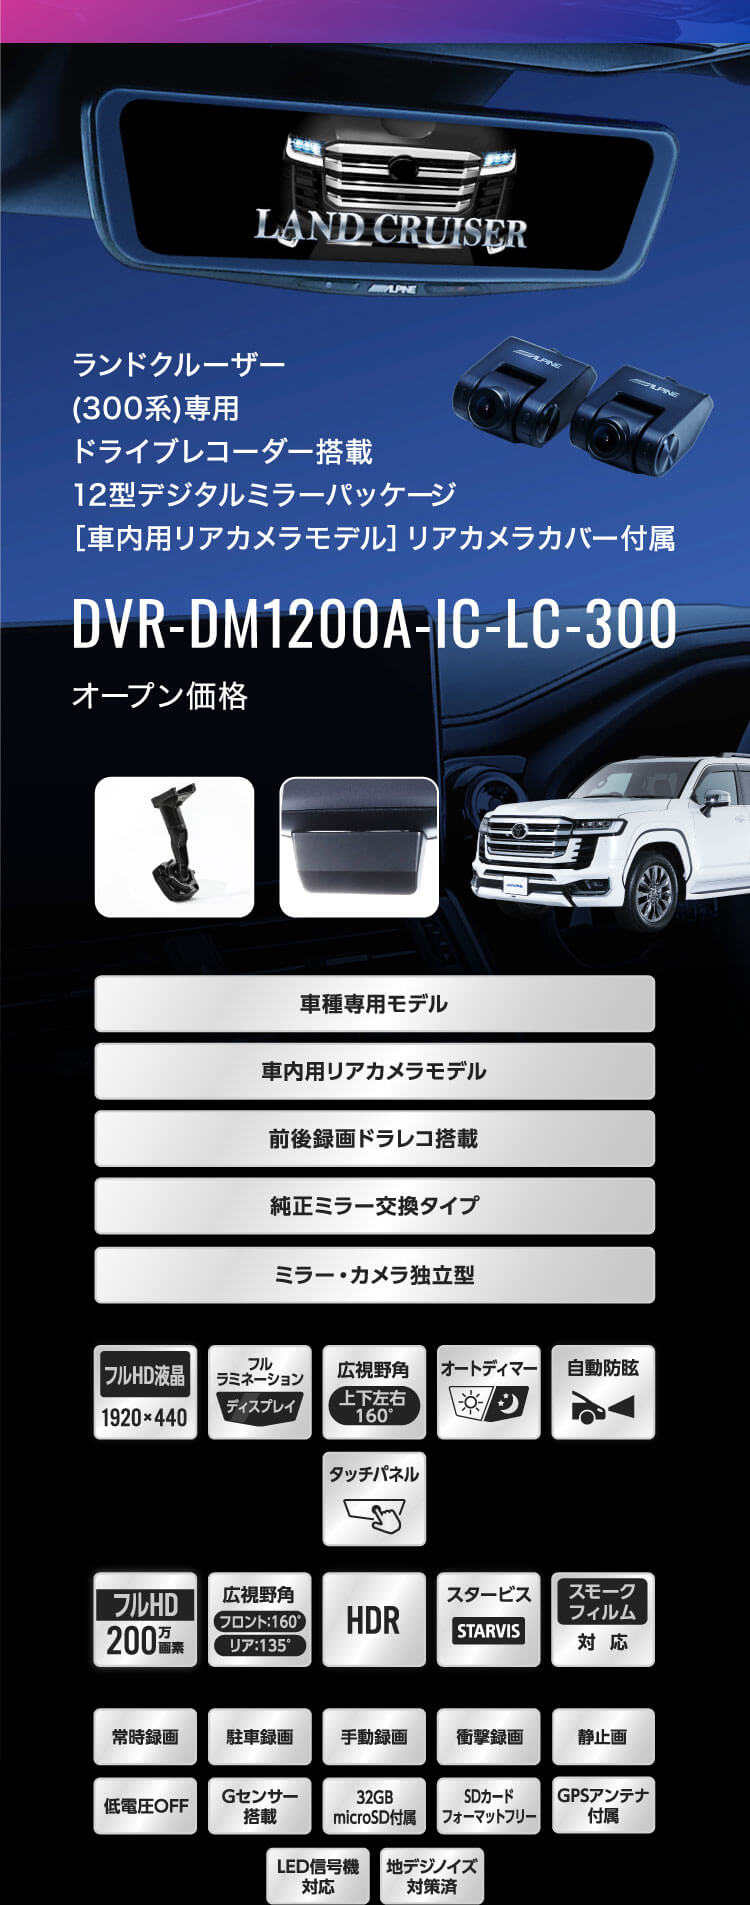 ランドクルーザー(300系)専用 ドライブレコーダー搭載12型デジタルミラーパッケージ［車内用リアカメラモデル］リアカメラカバー付属 DVR-DM1200A-IC-LC-300 オープン価格